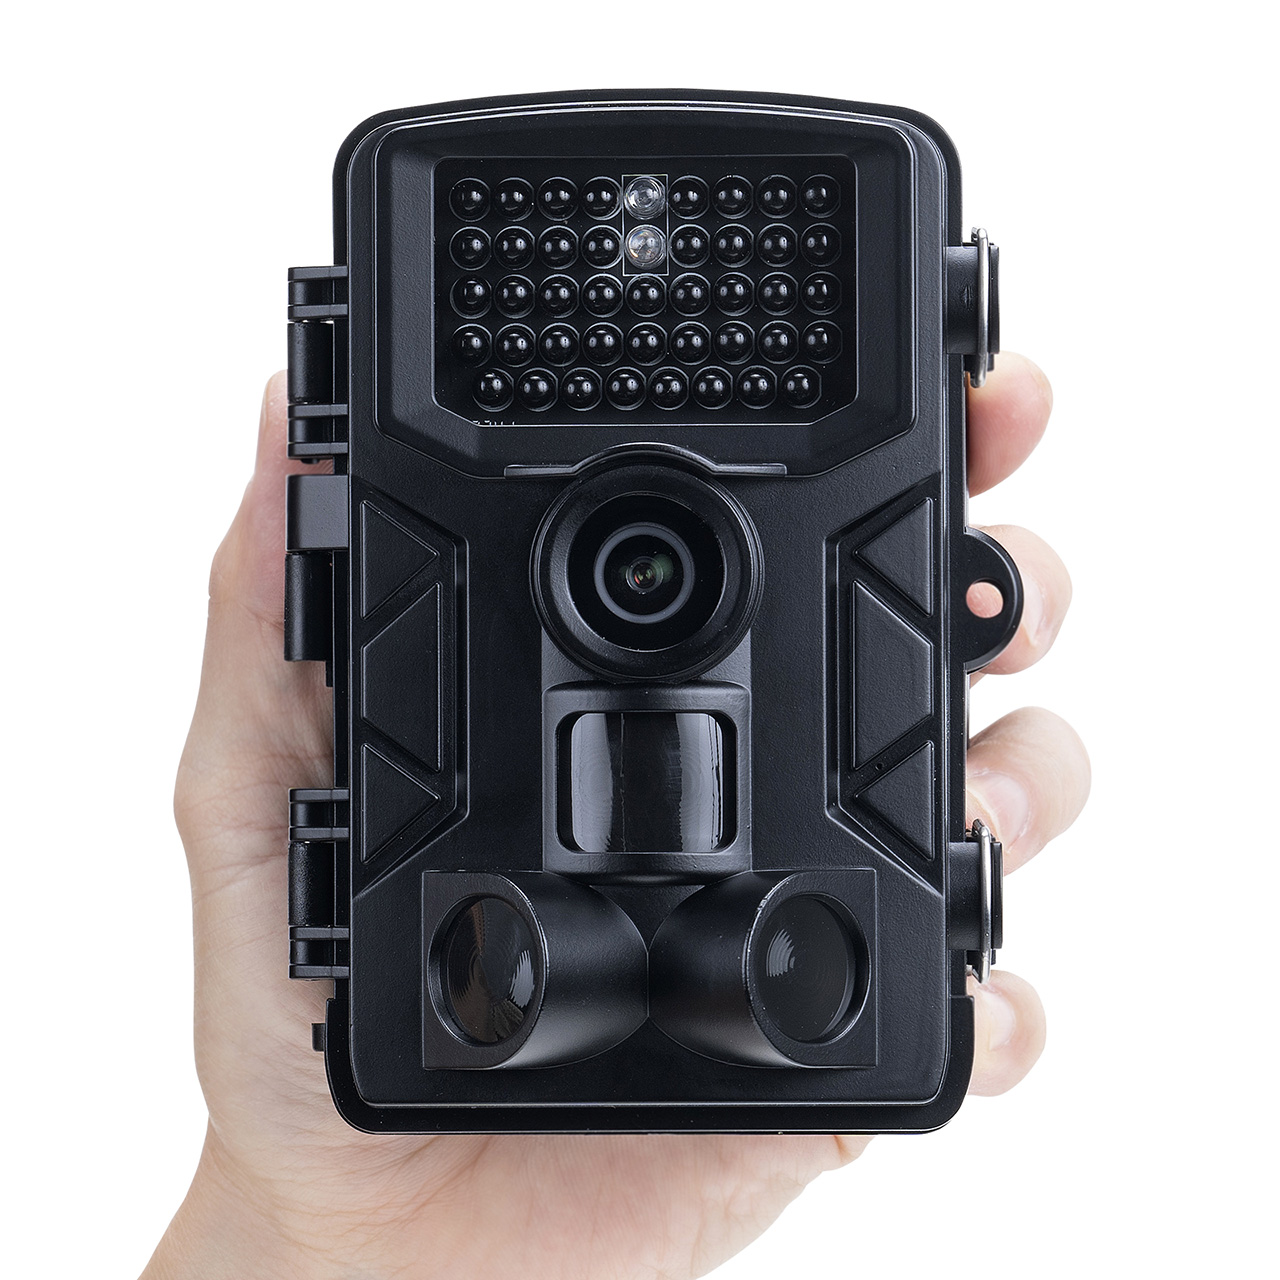 トレイルカメラ 防犯カメラ 屋外対応 フルHD 動物撮影 鳥獣対策 IP65 